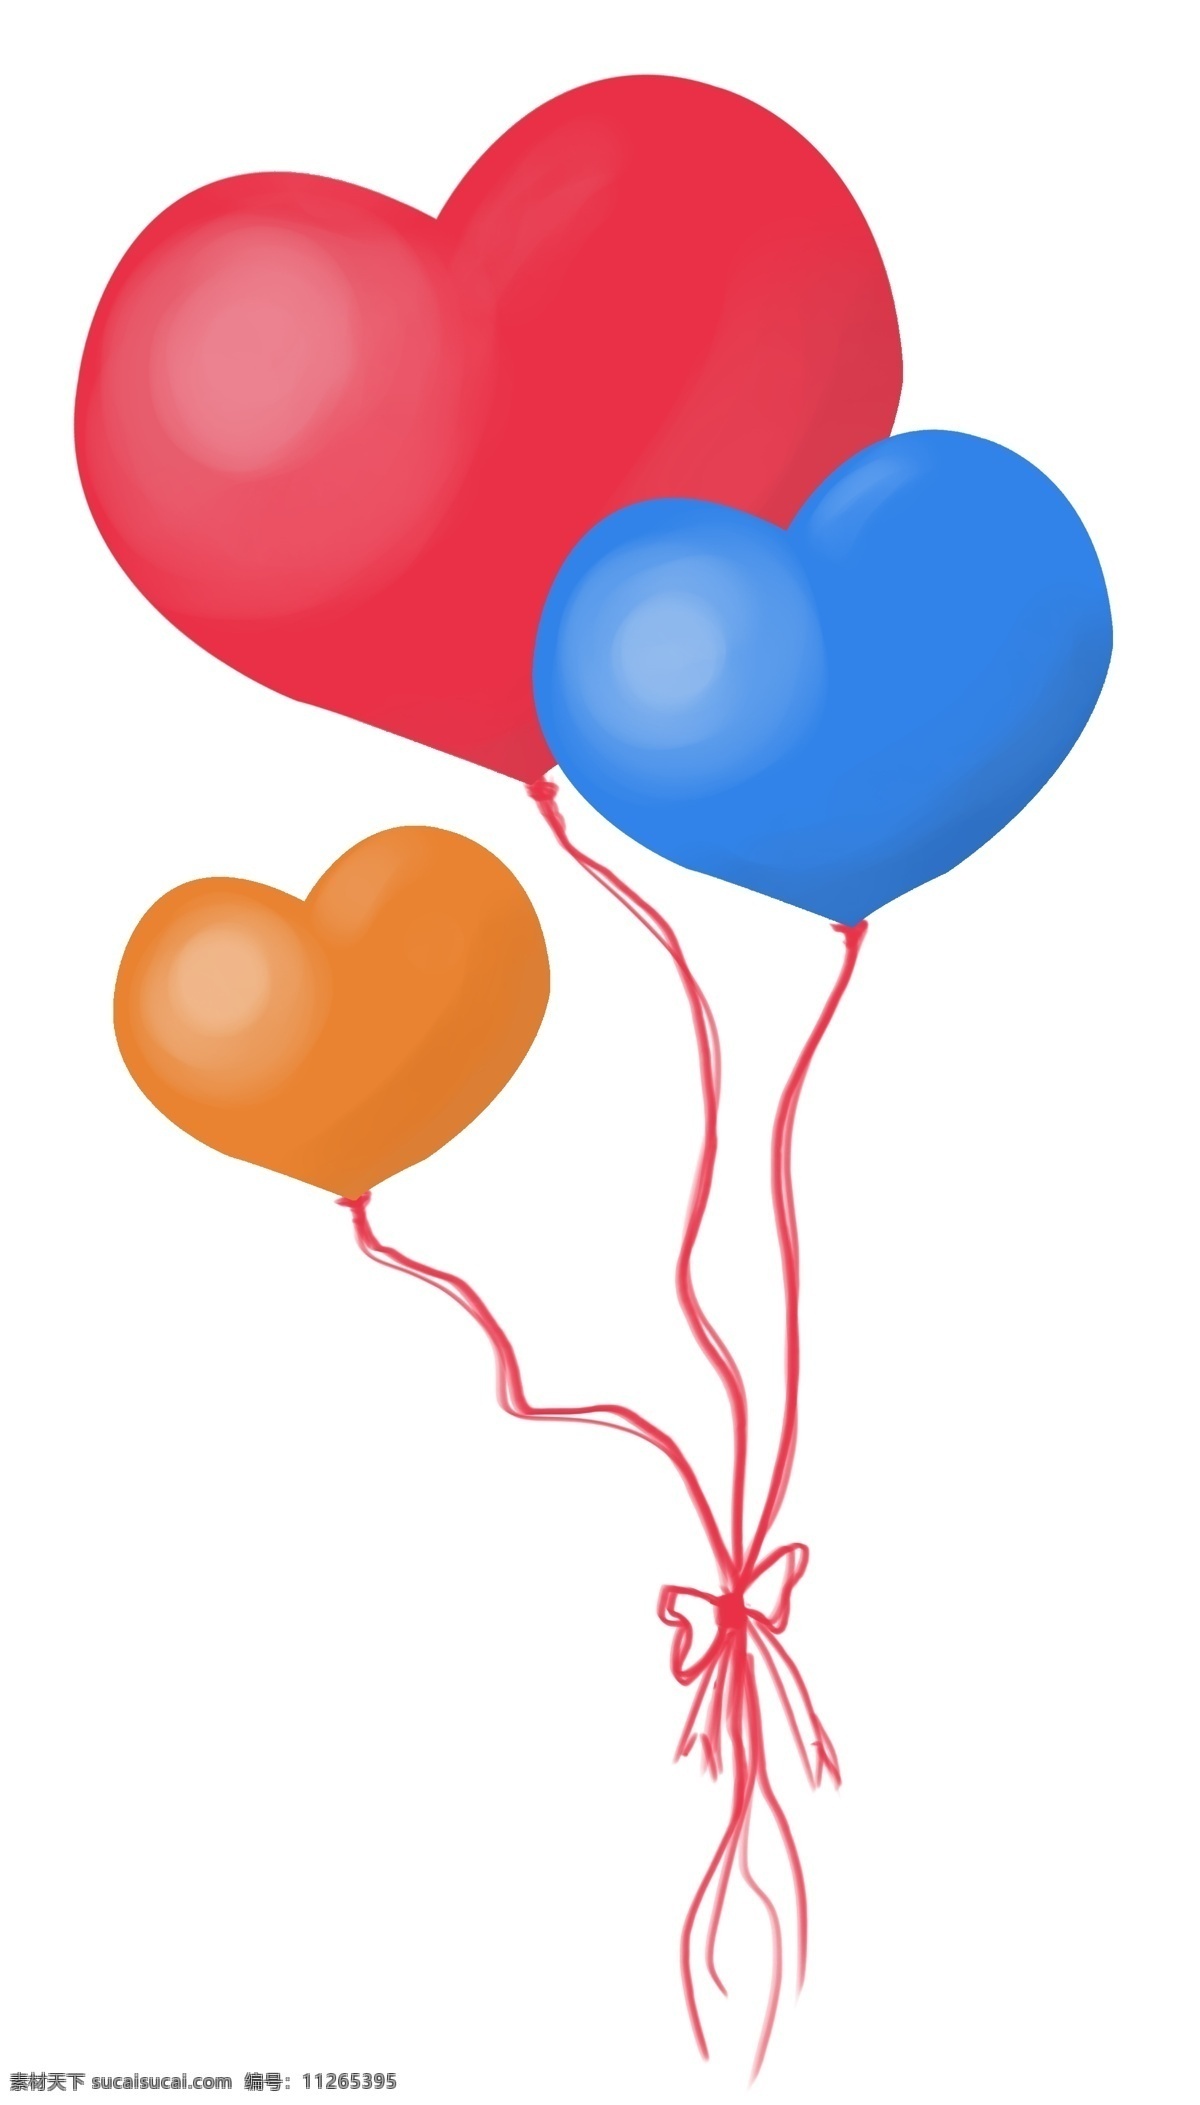 红色 爱心 气球 插画 彩色 浪漫 爱情 节日 情人节 装饰 爱心气球插画 手绘红气球 飘起的气球 红色气球